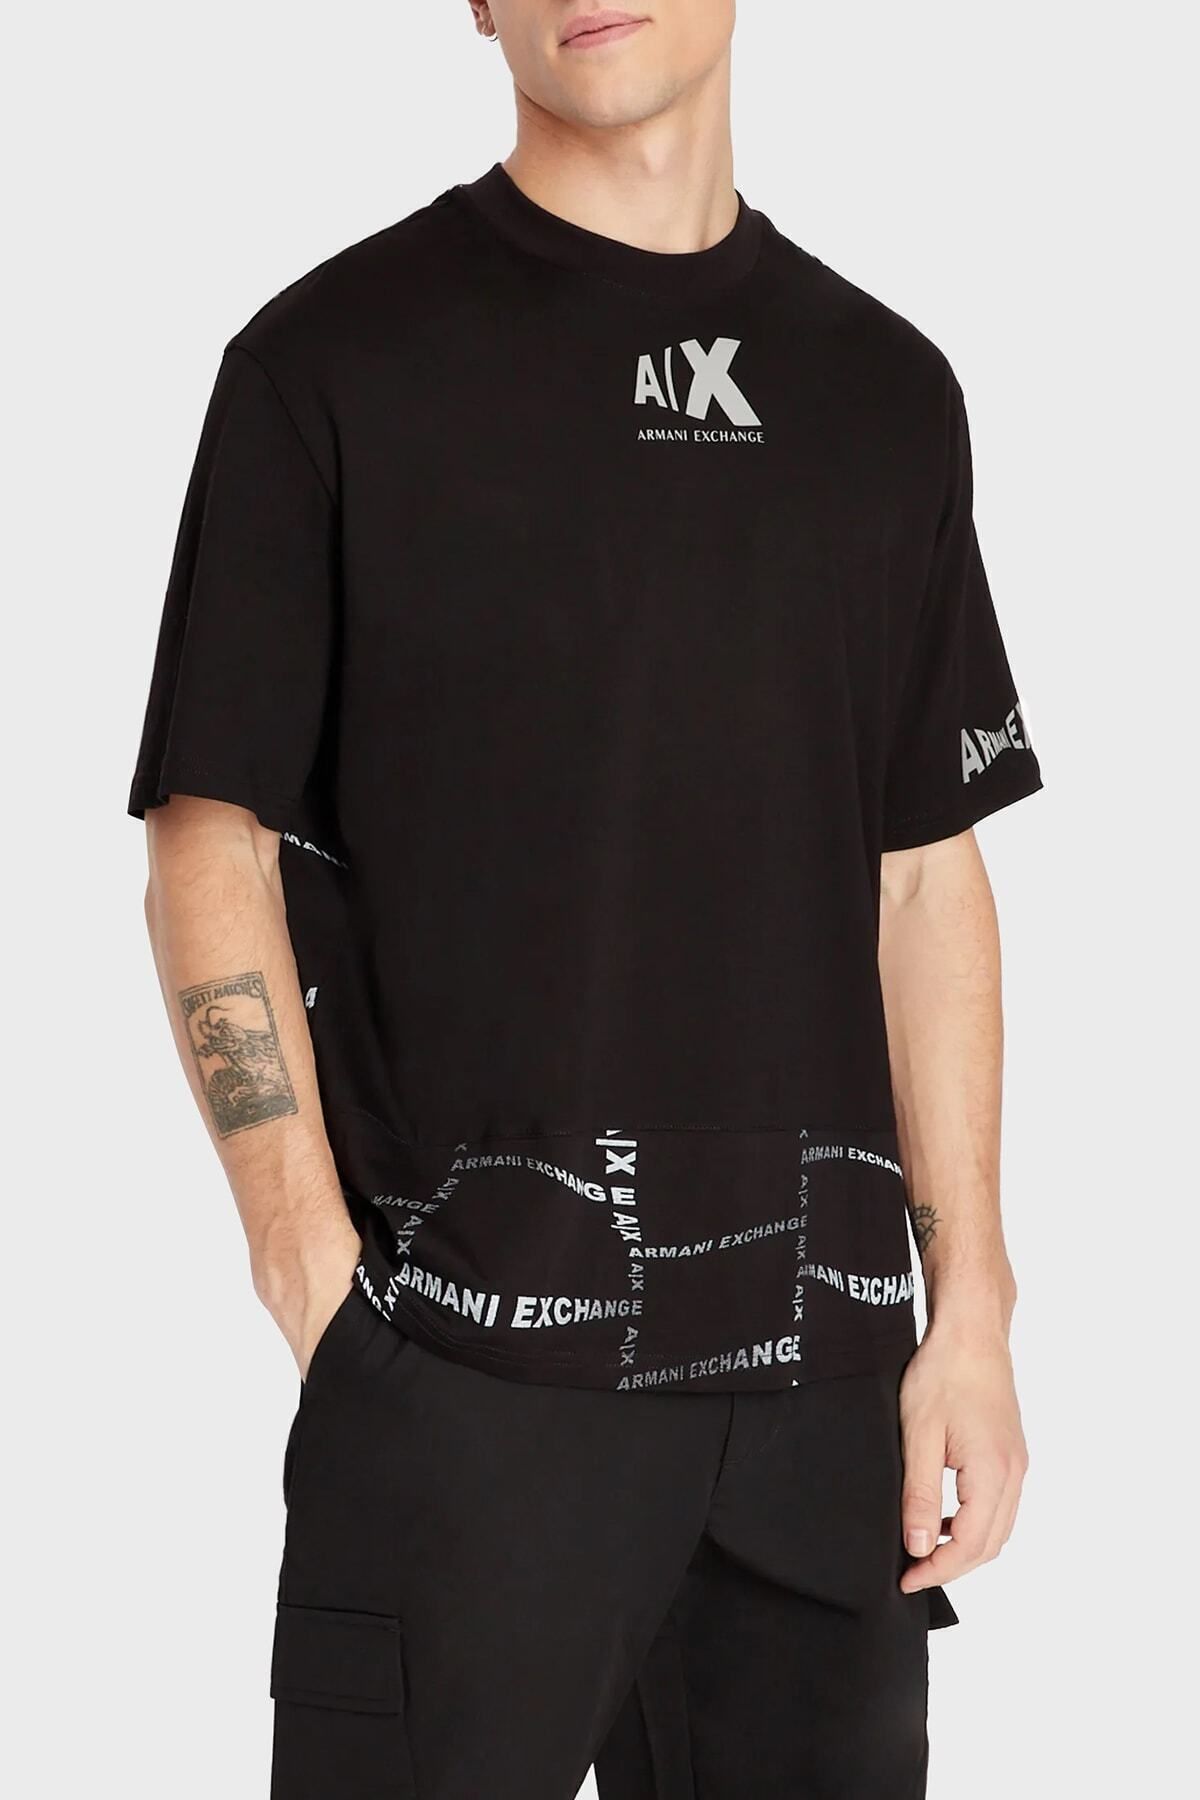 Armani Exchange Logolu Bisiklet Yaka % 100 Pamuk Regular Fit T Shirt Erkek T Shirt 3rzmfe Zj8ez 52ag